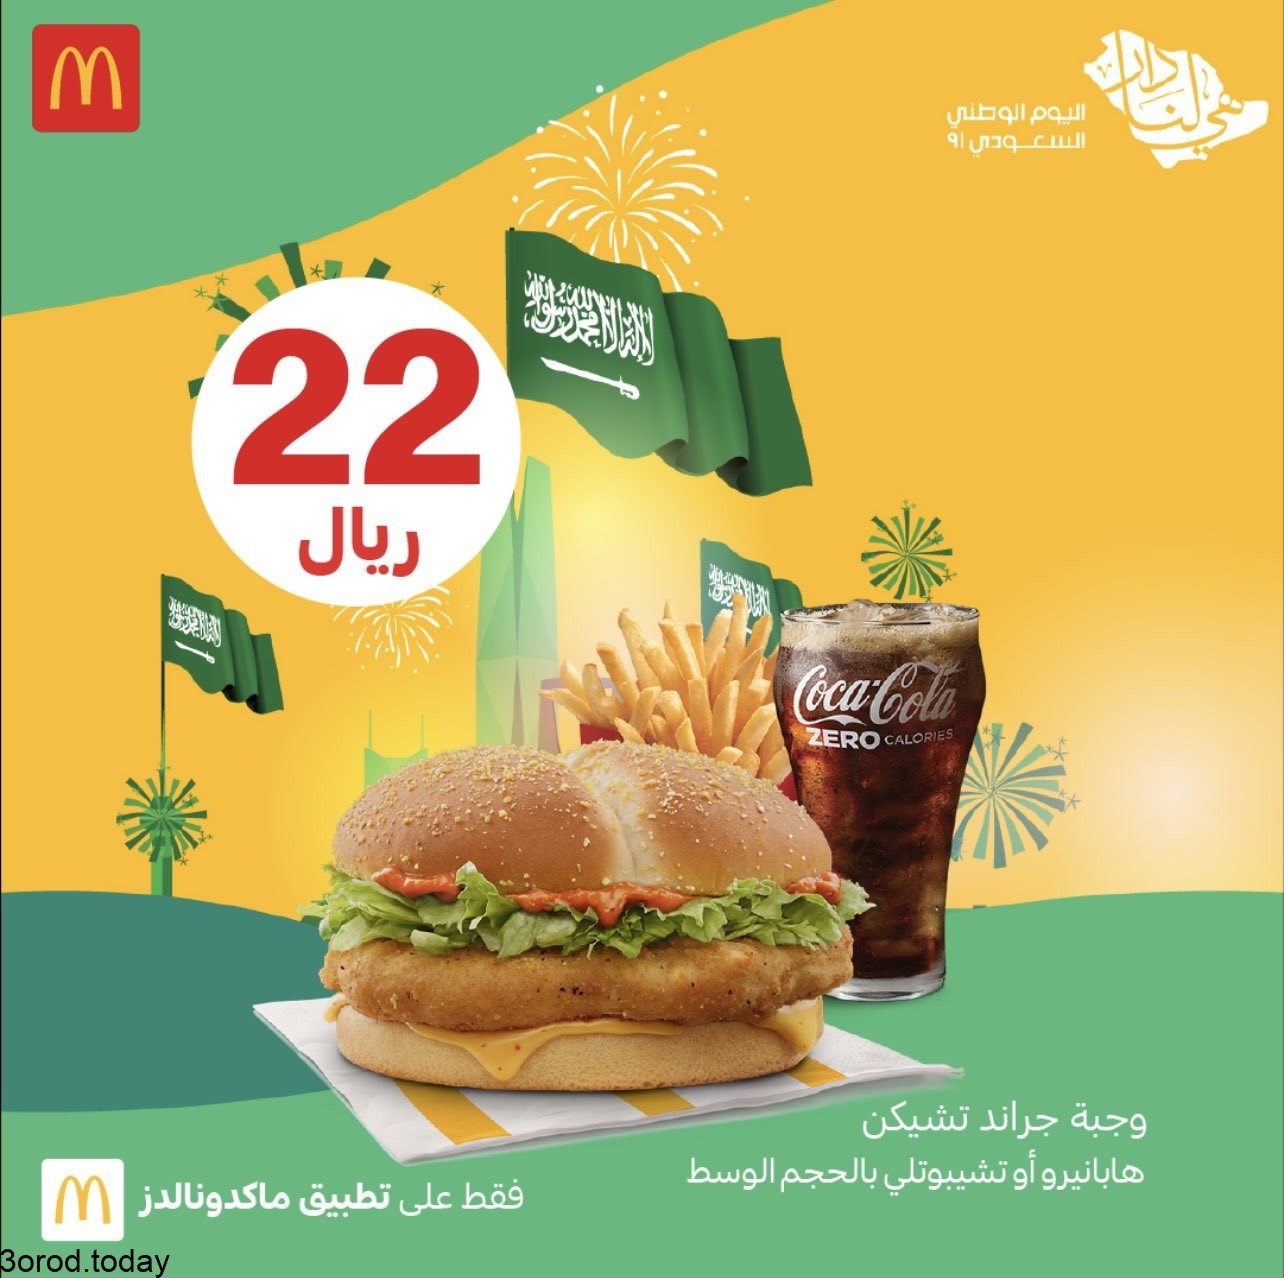 E 6XZRvUUAIDJrs 1 - عروض المطاعم : عروض مطعم ماكدونالدز السعودية الغربية و الجنوبية